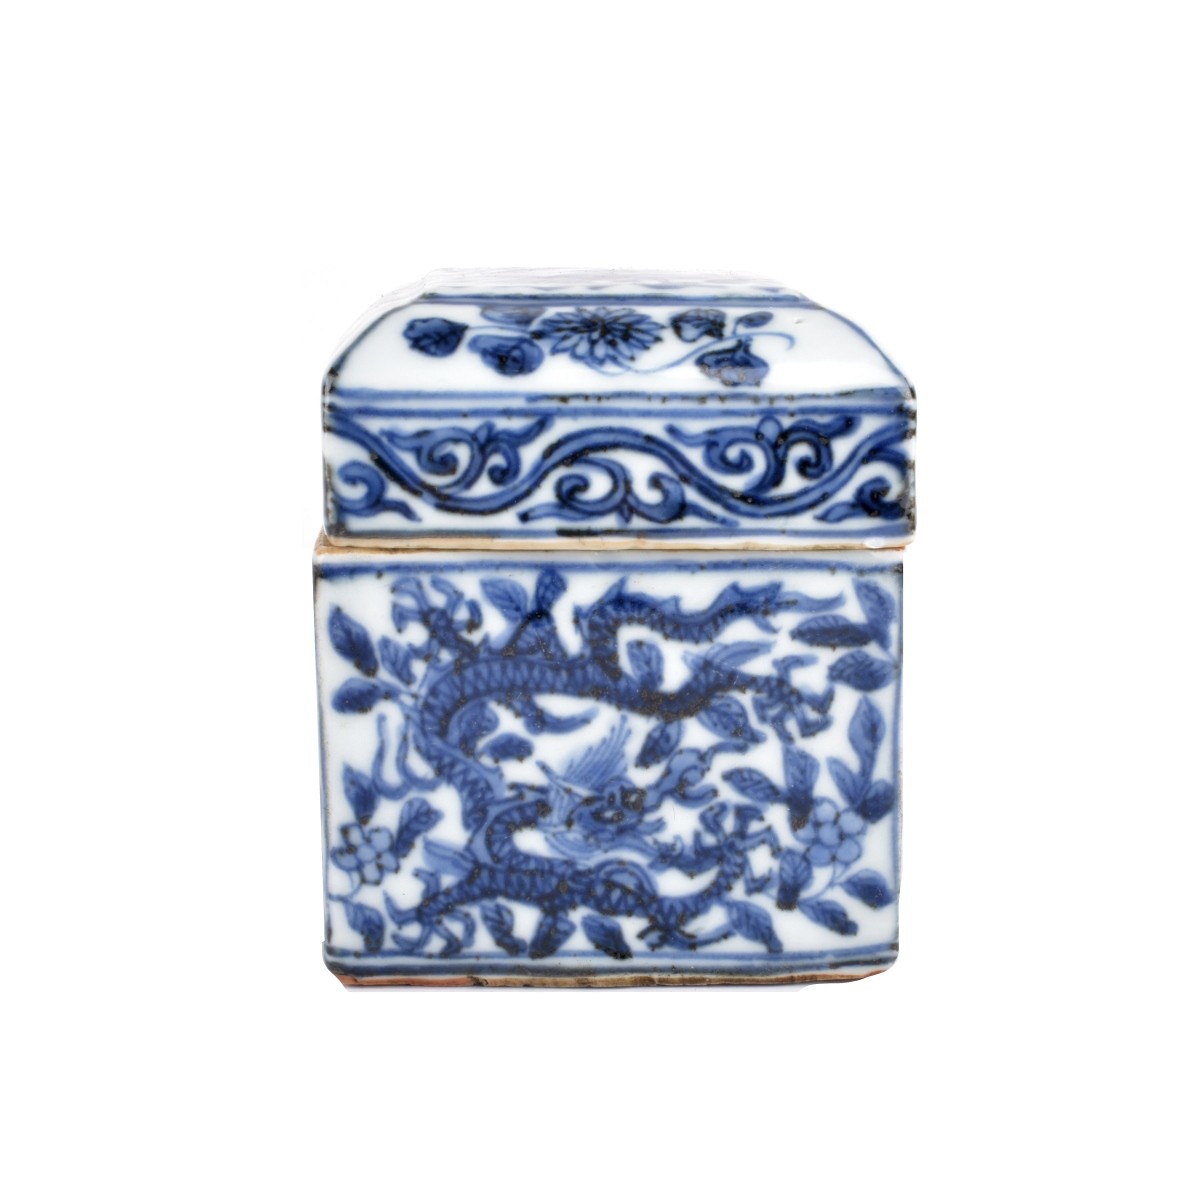 Chinese Ming style Box